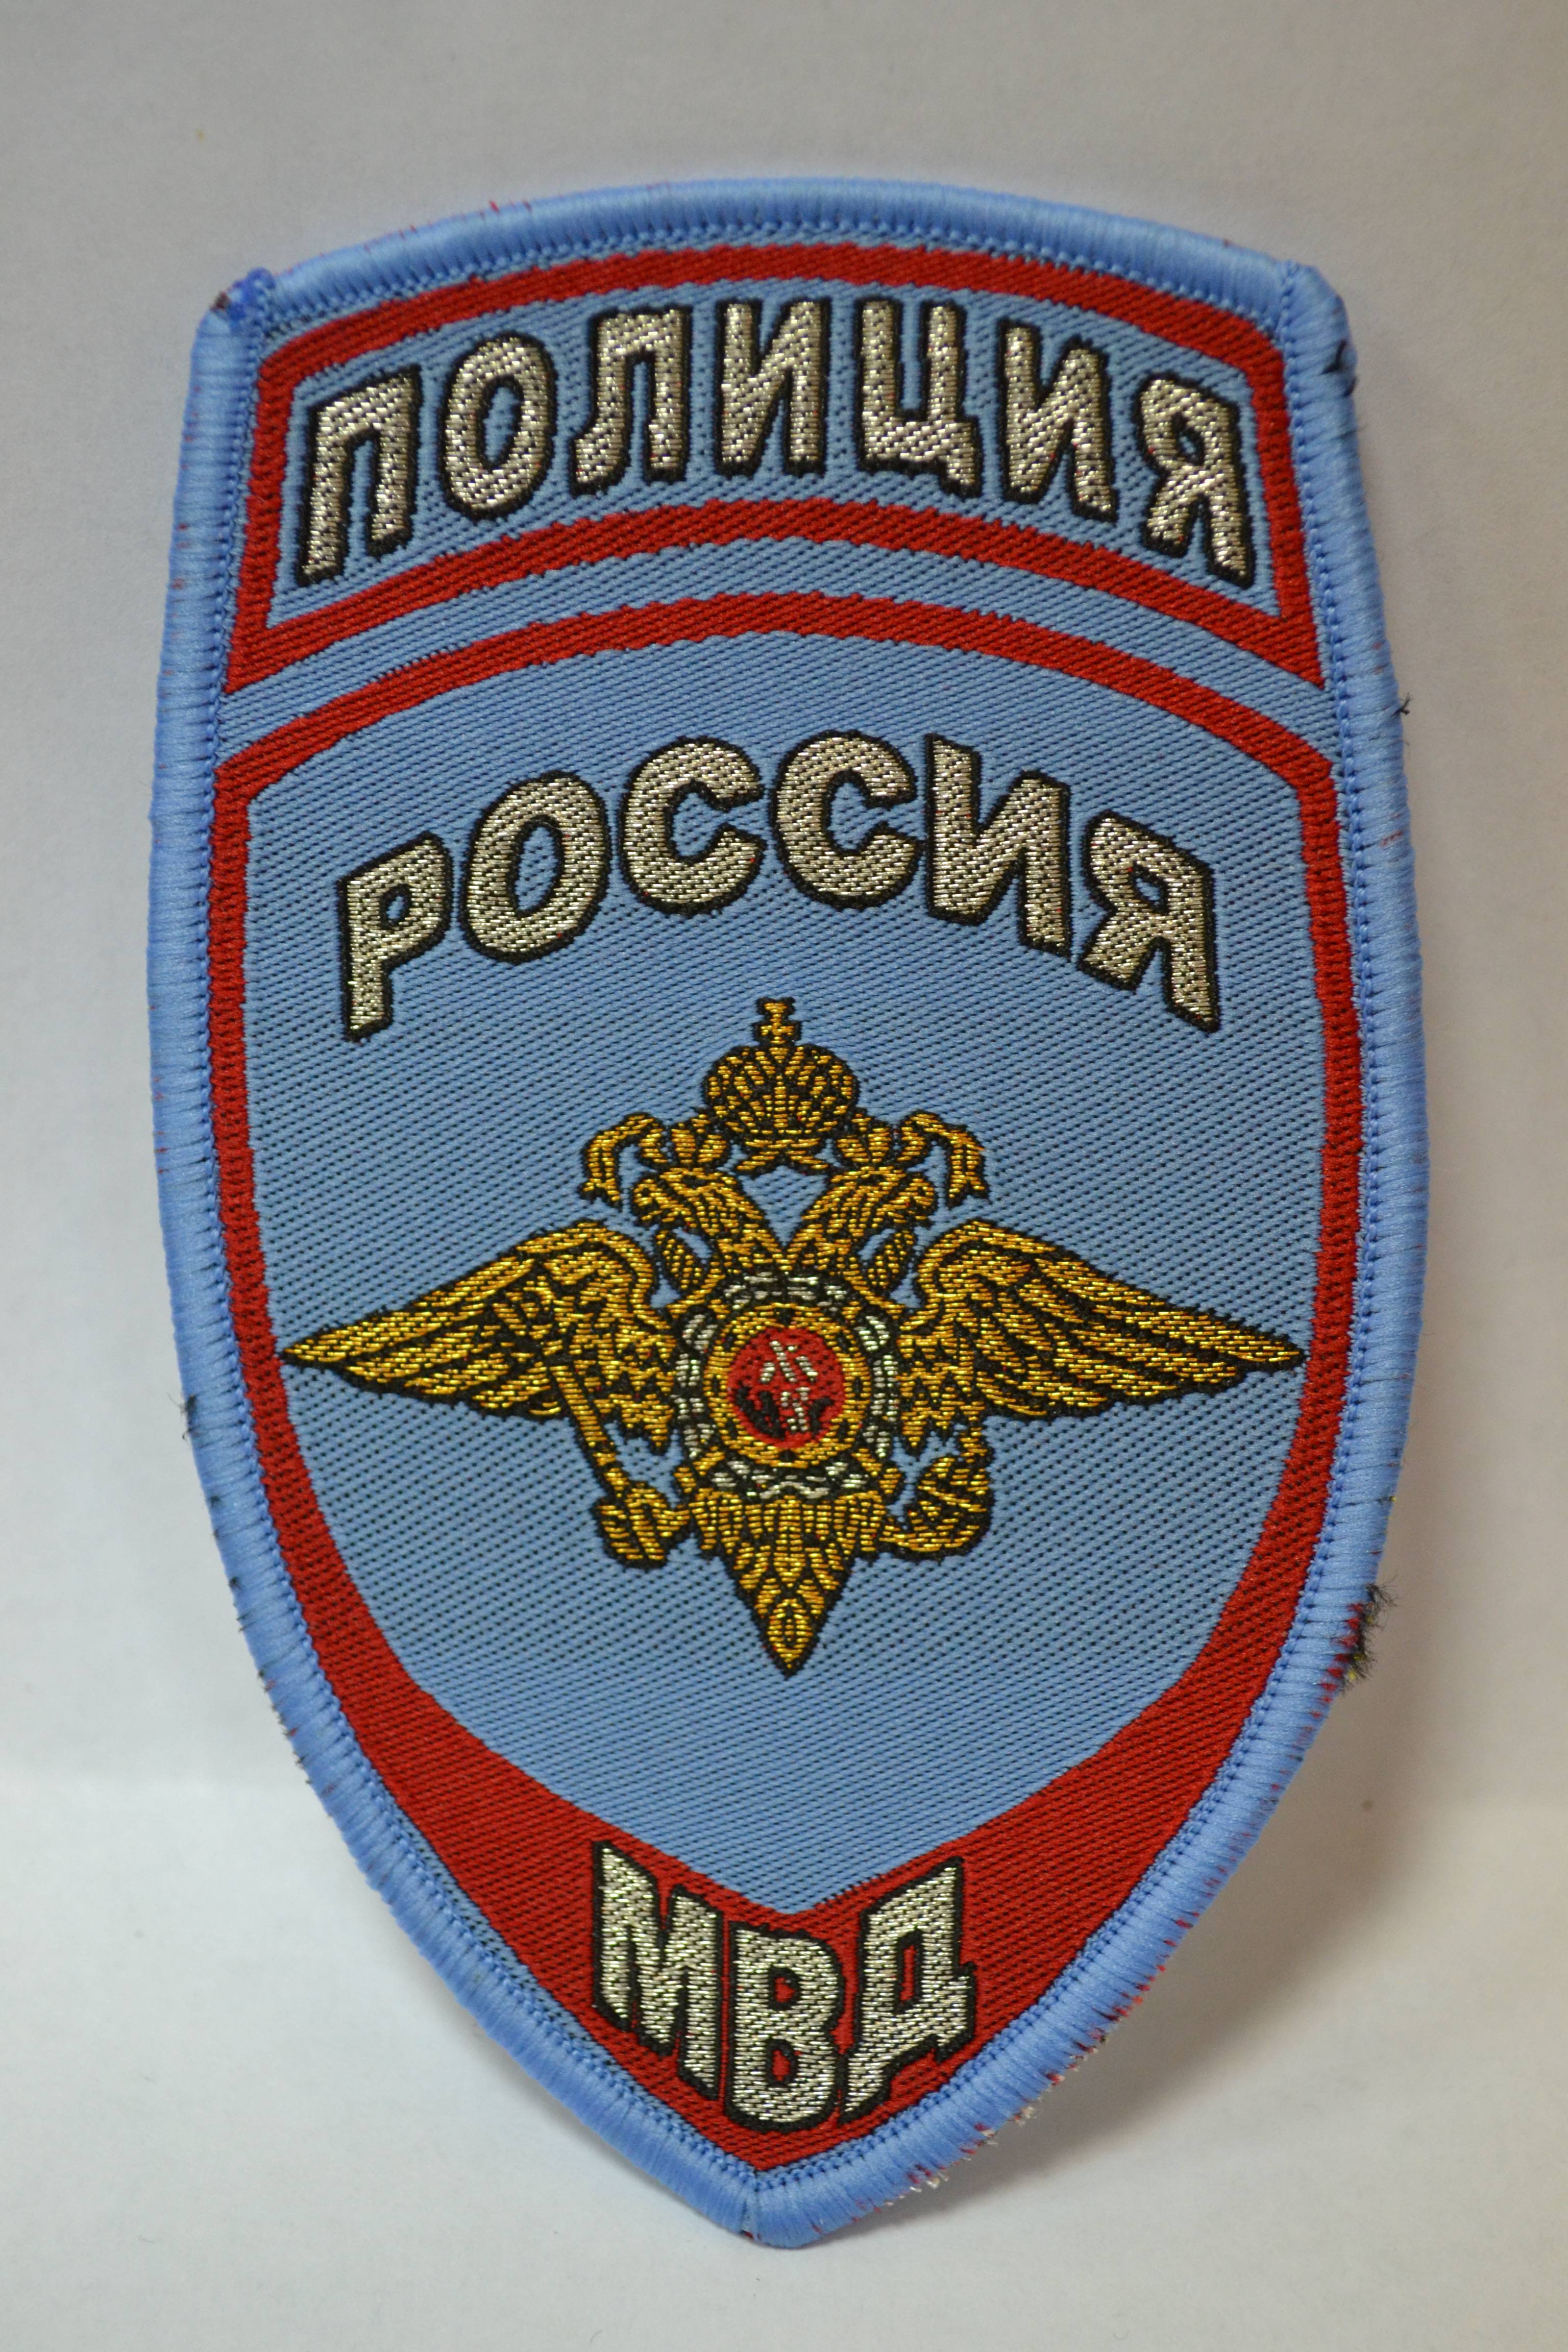 Шеврон Полиция МВД России